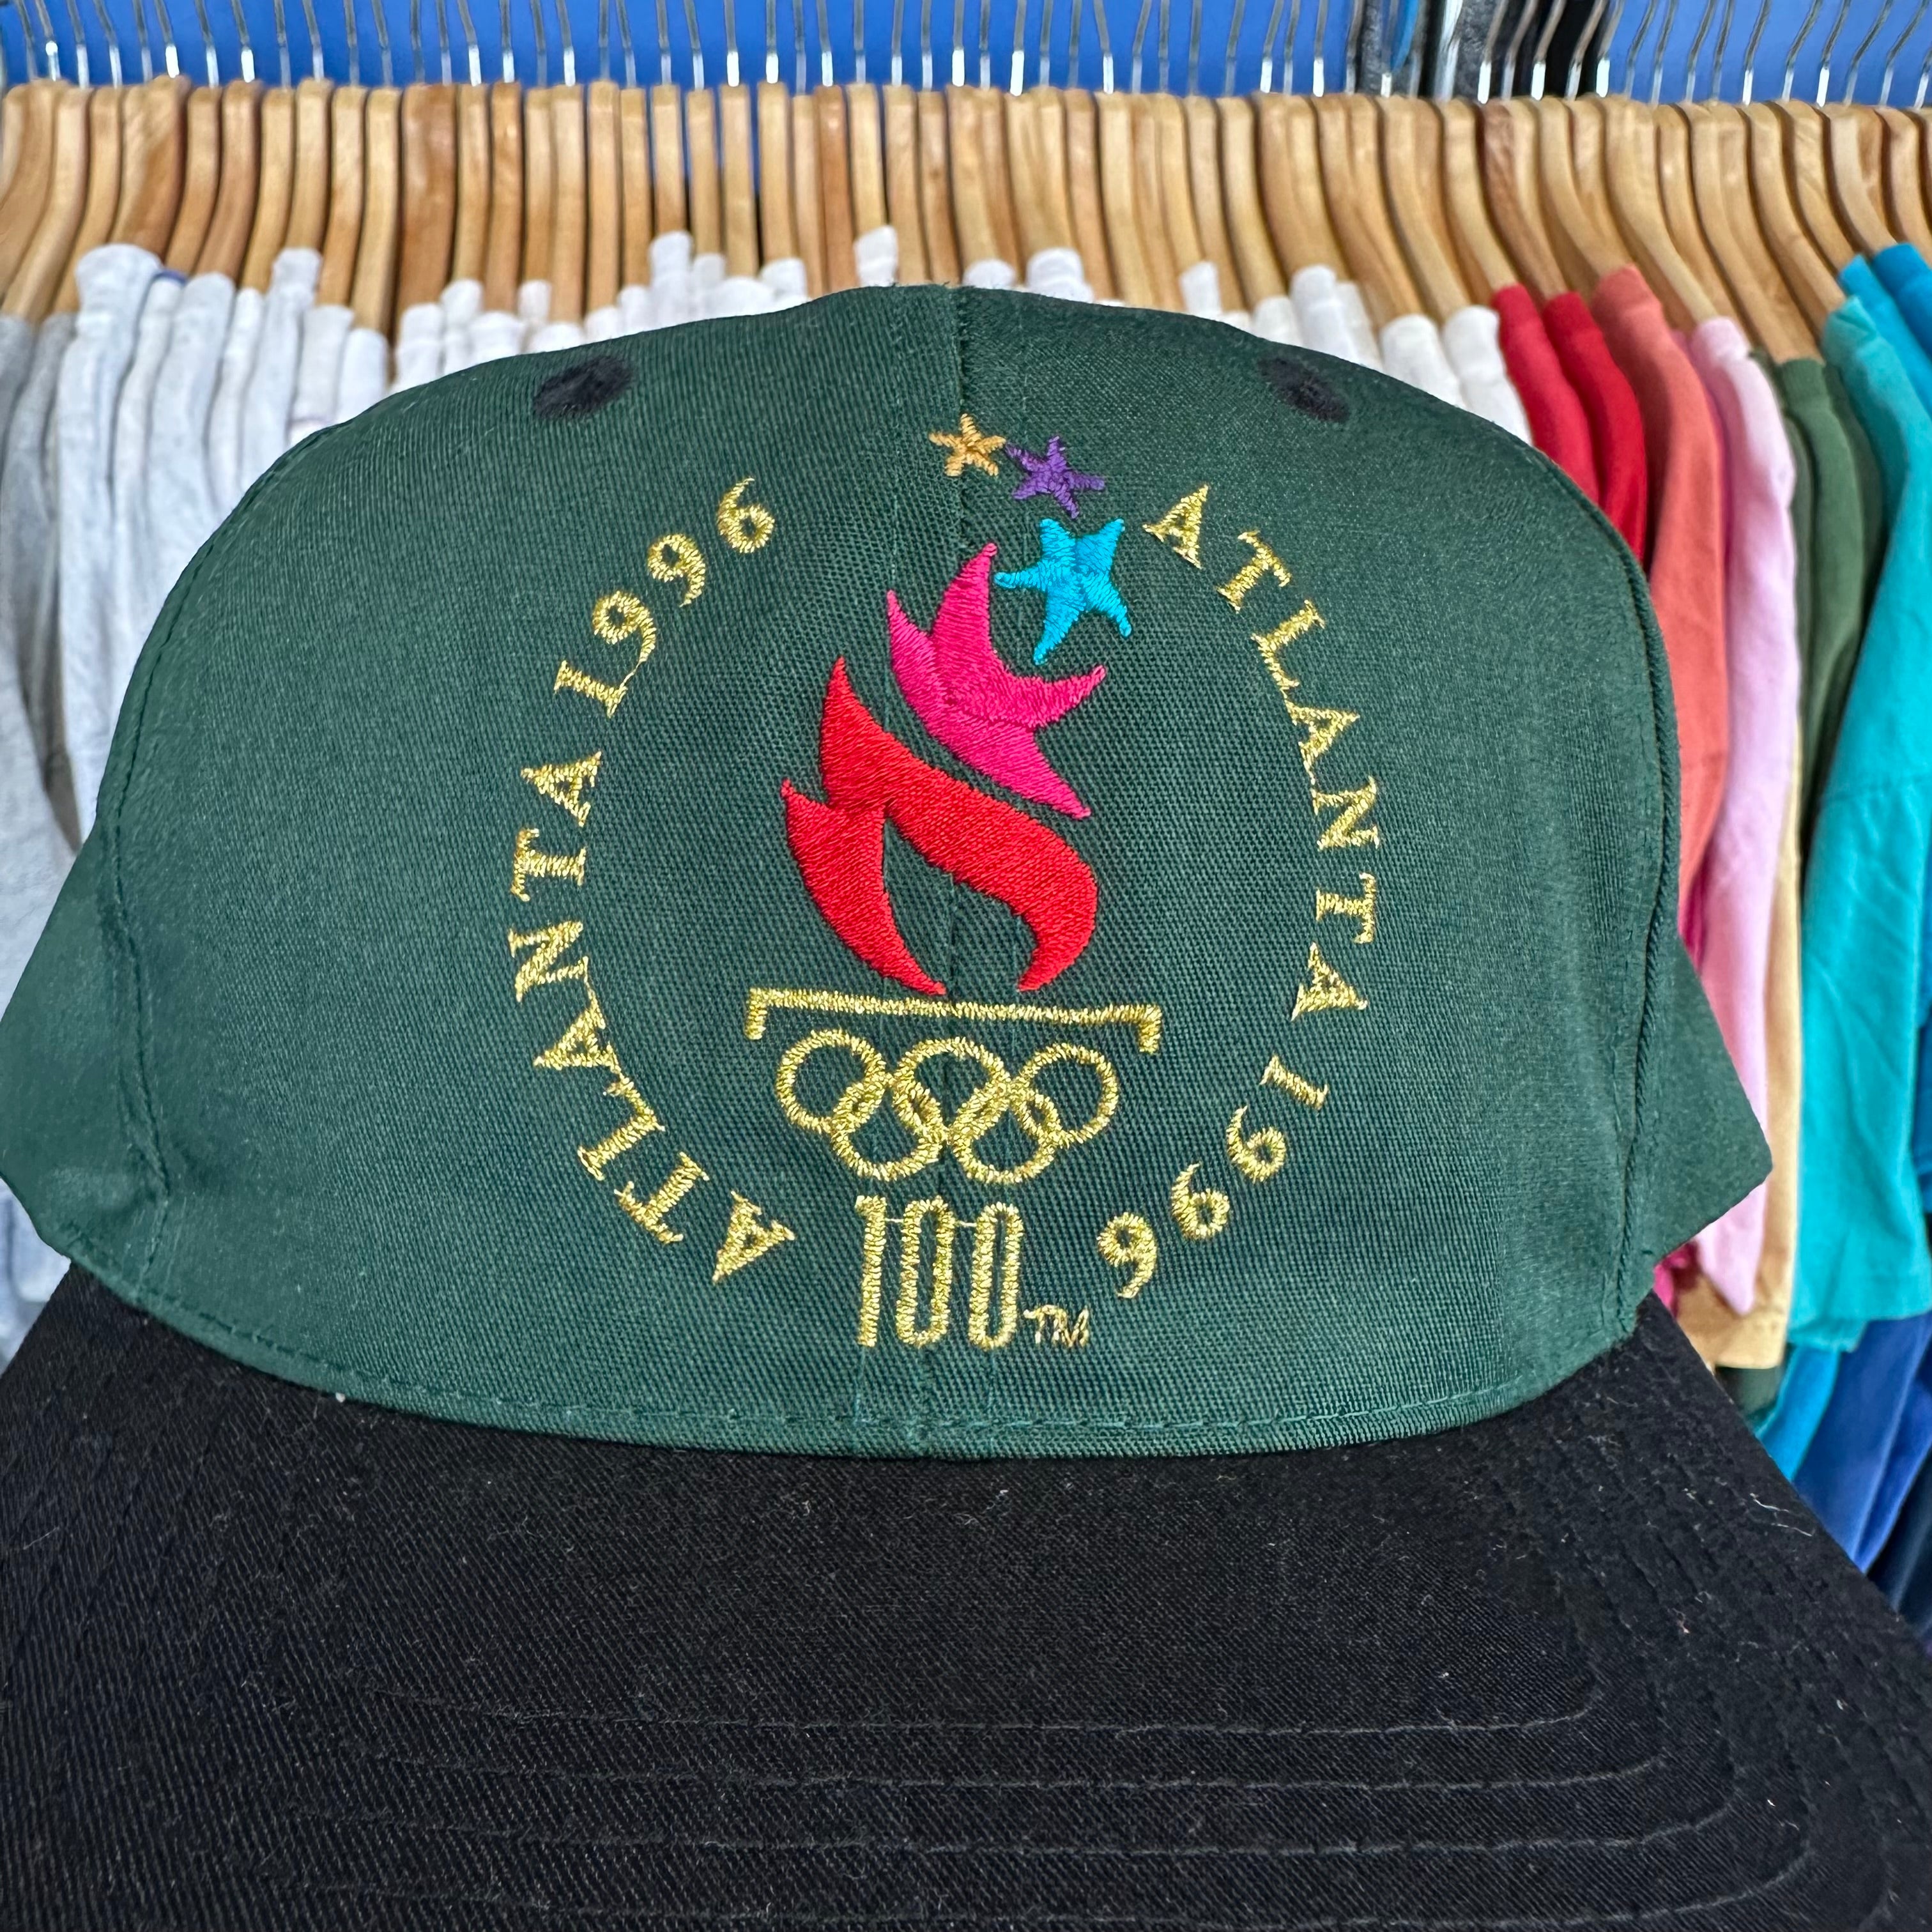 Atlanta 1996 Olympics Hat